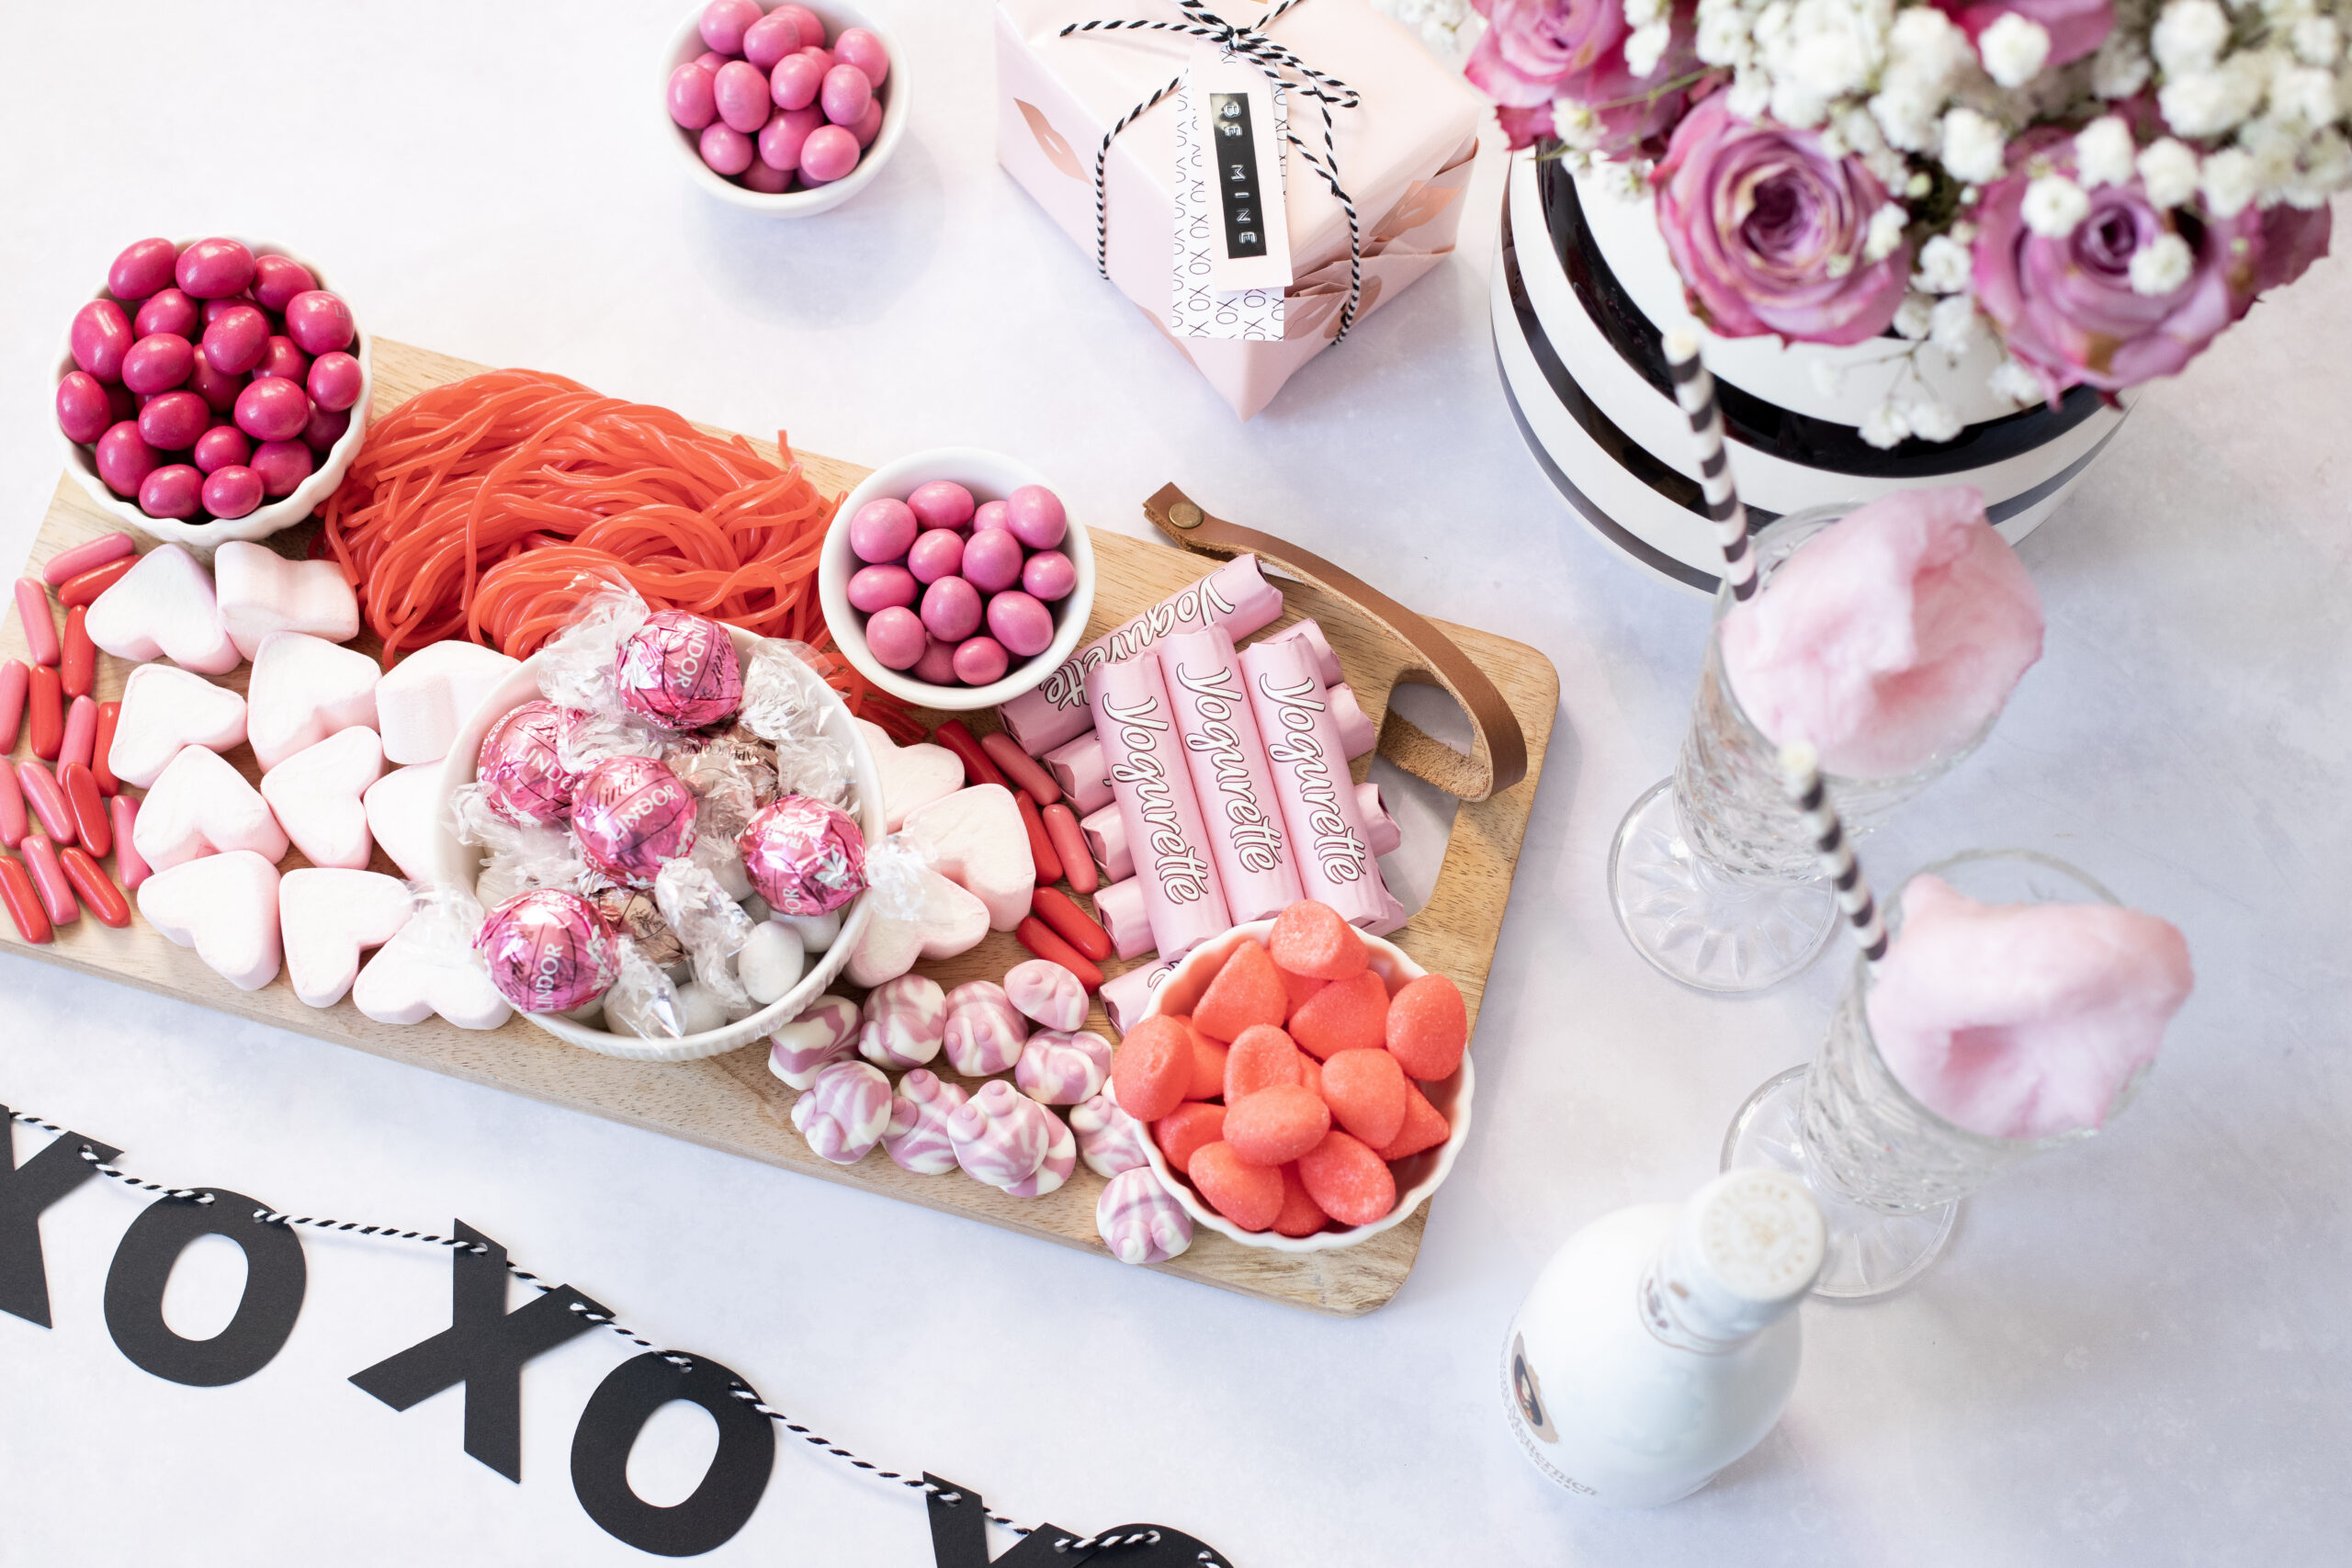 Süße Überraschung zum Valentinstag: Das Candy Board